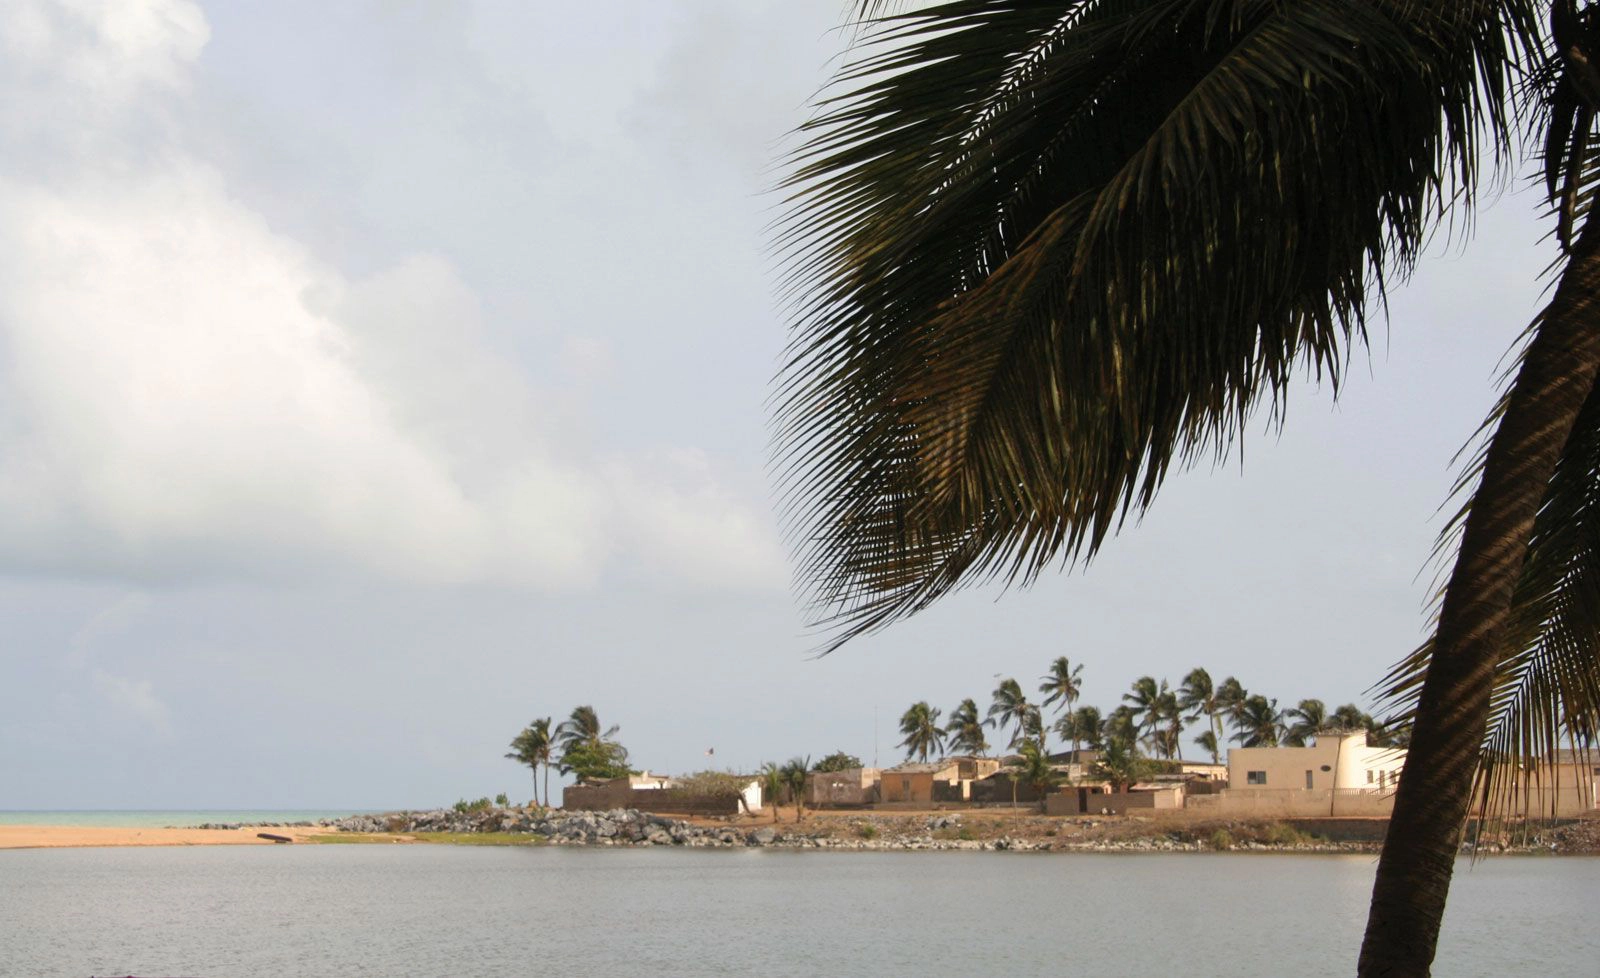  Aneho  strand - Togo